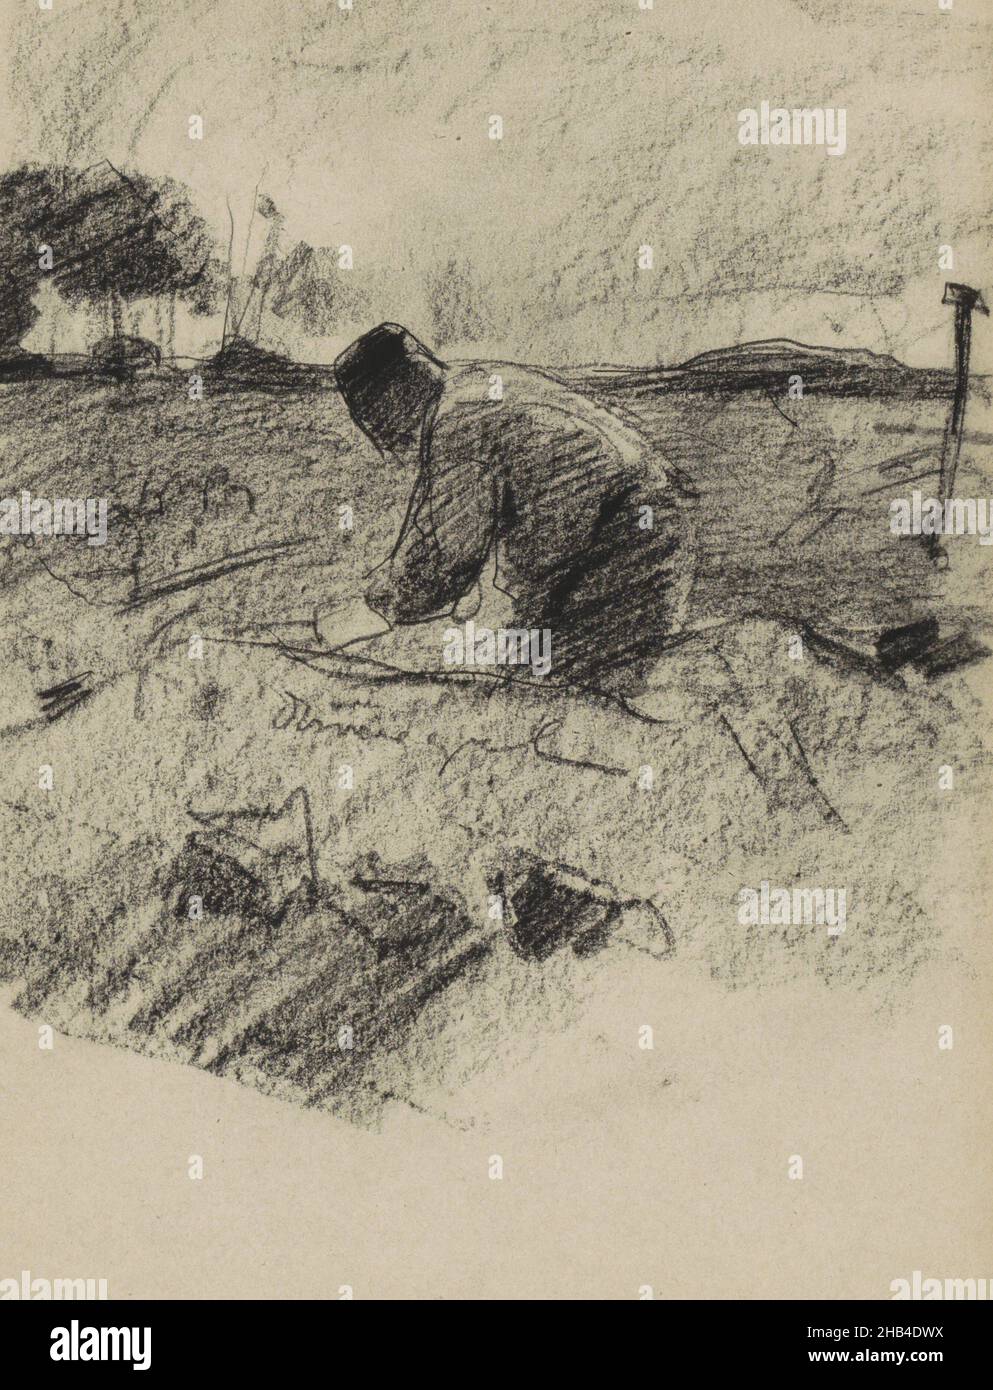 Seite 42 aus einem Skizzenbuch mit 49 Seiten, Landarbeiter, Zeichner: Willem Witsen, Ewijkshoeve, c. 1884 - c. 1887, Willem Witsen, c. 1884 - c. 1887 Stockfoto